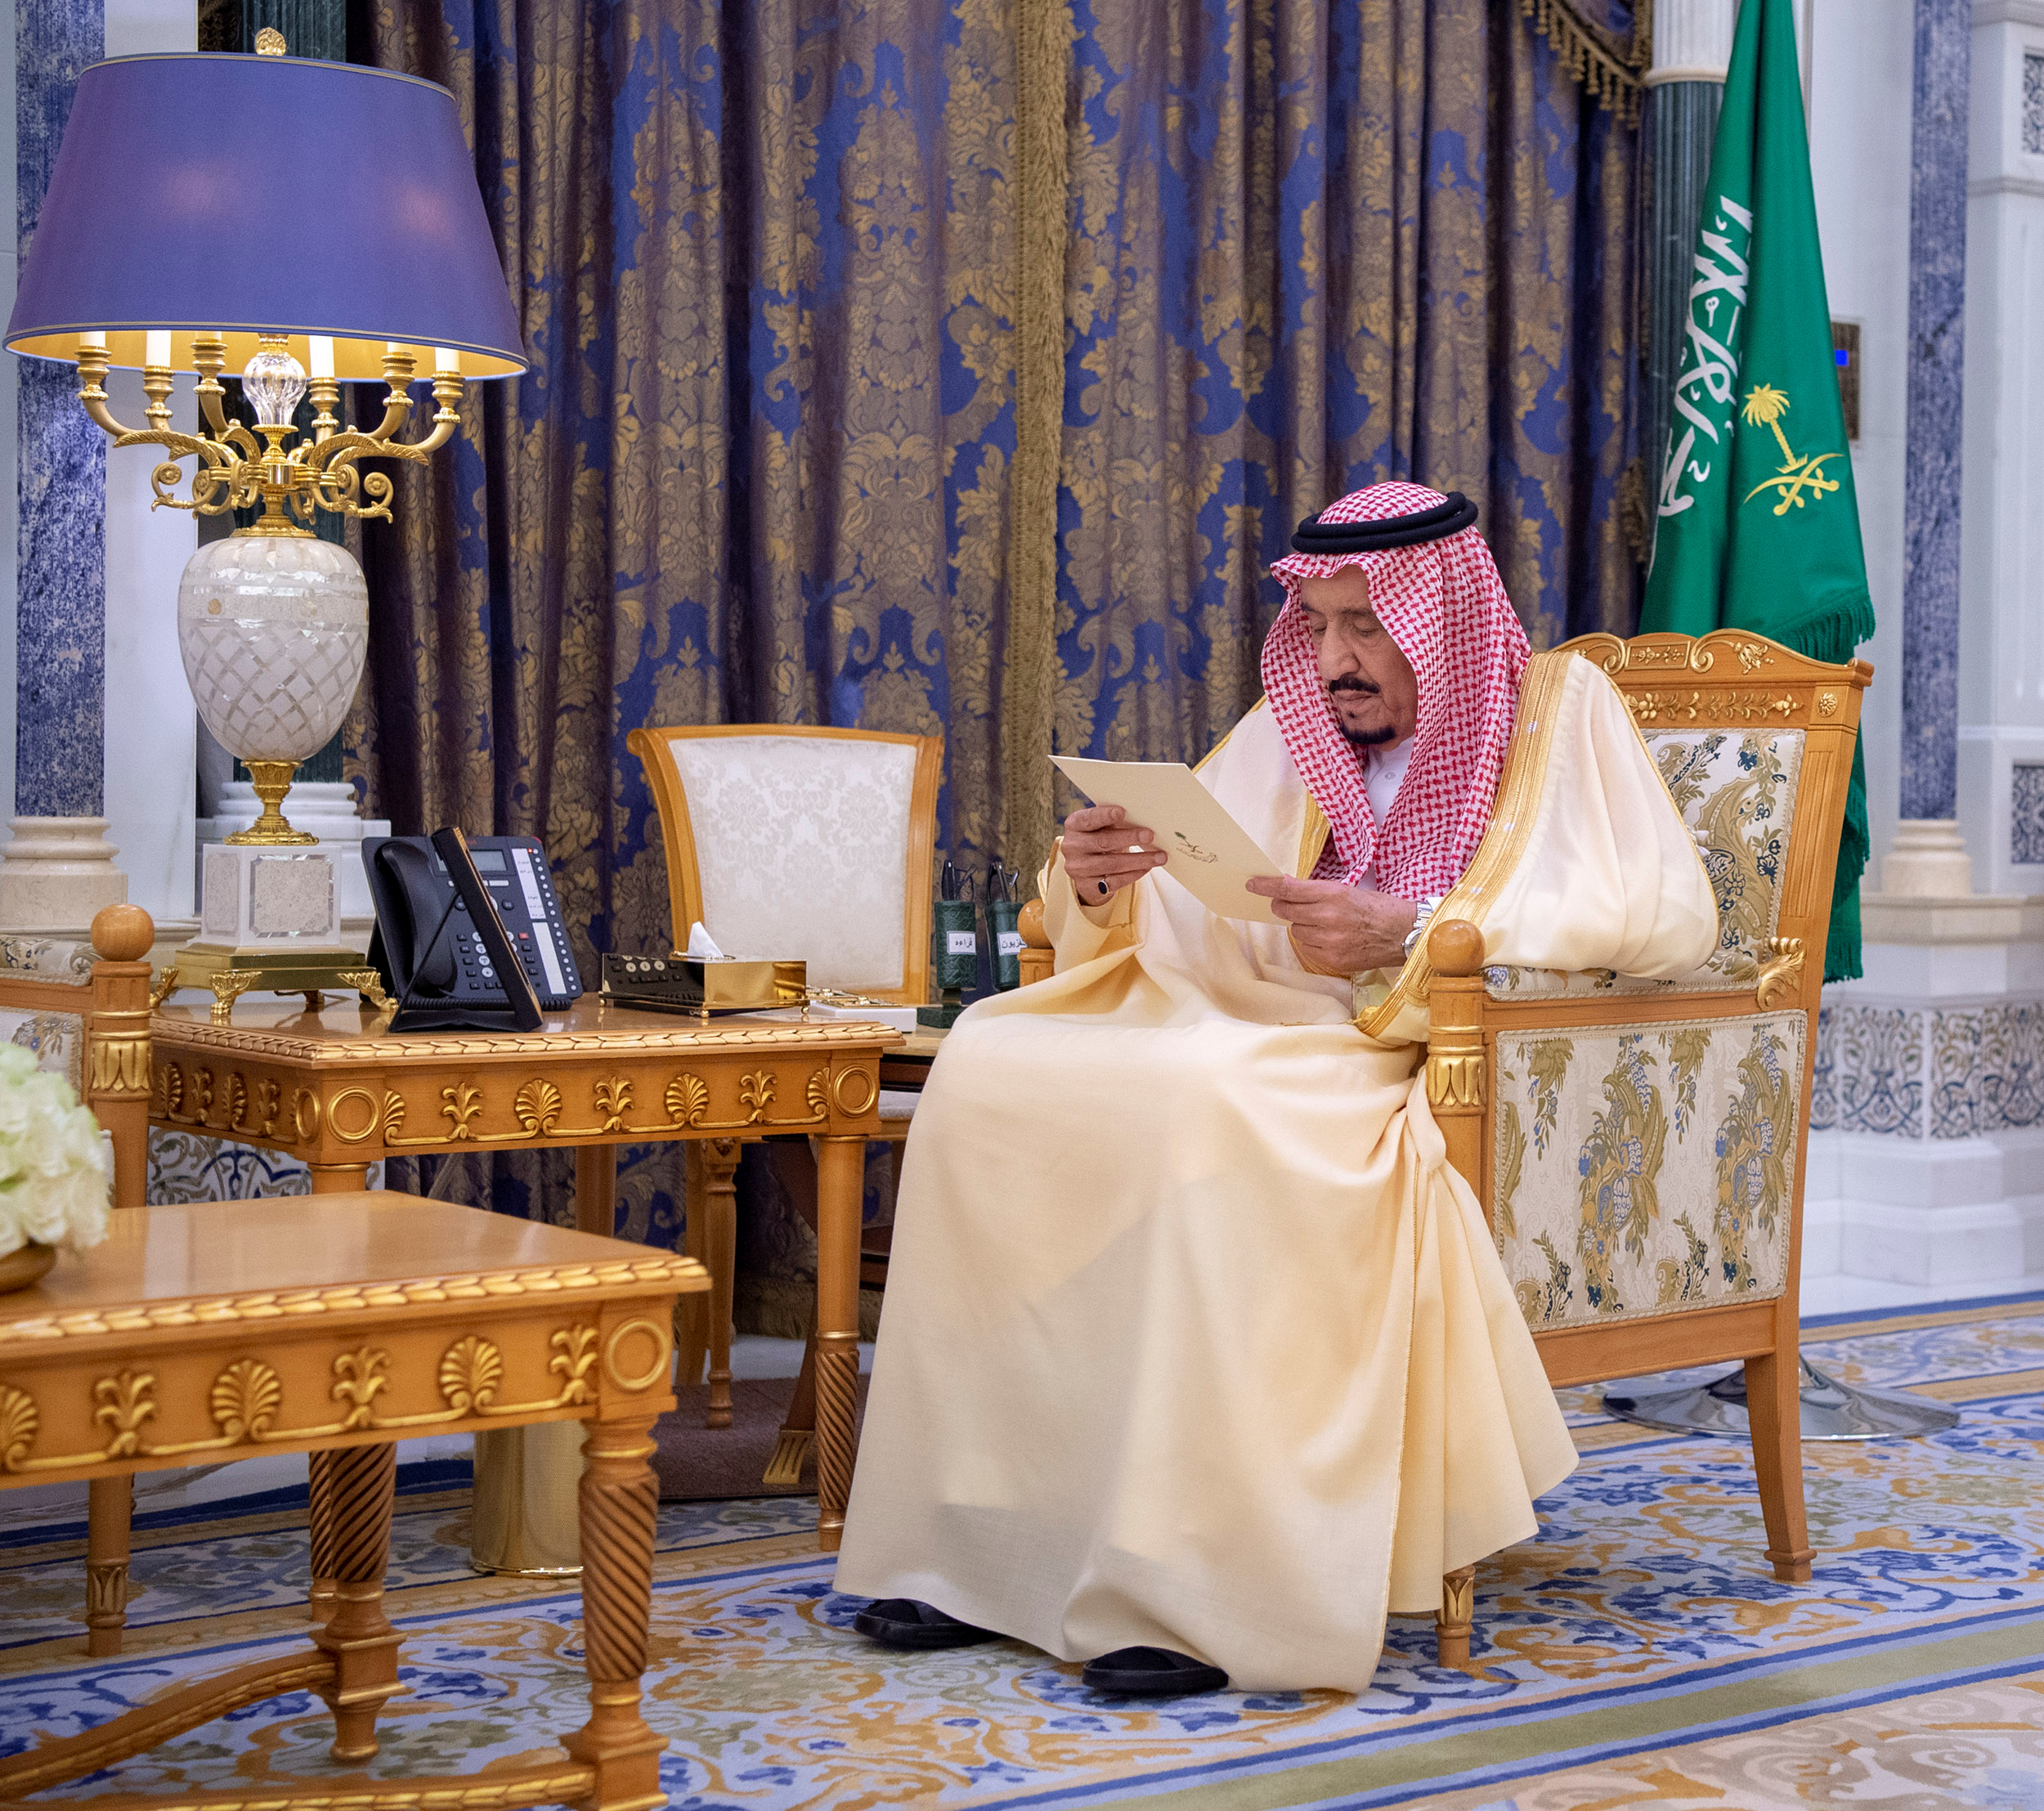 La agencia oficial saudí difunde fotos del rey Salman entre rumores sobre supuesta sucesión